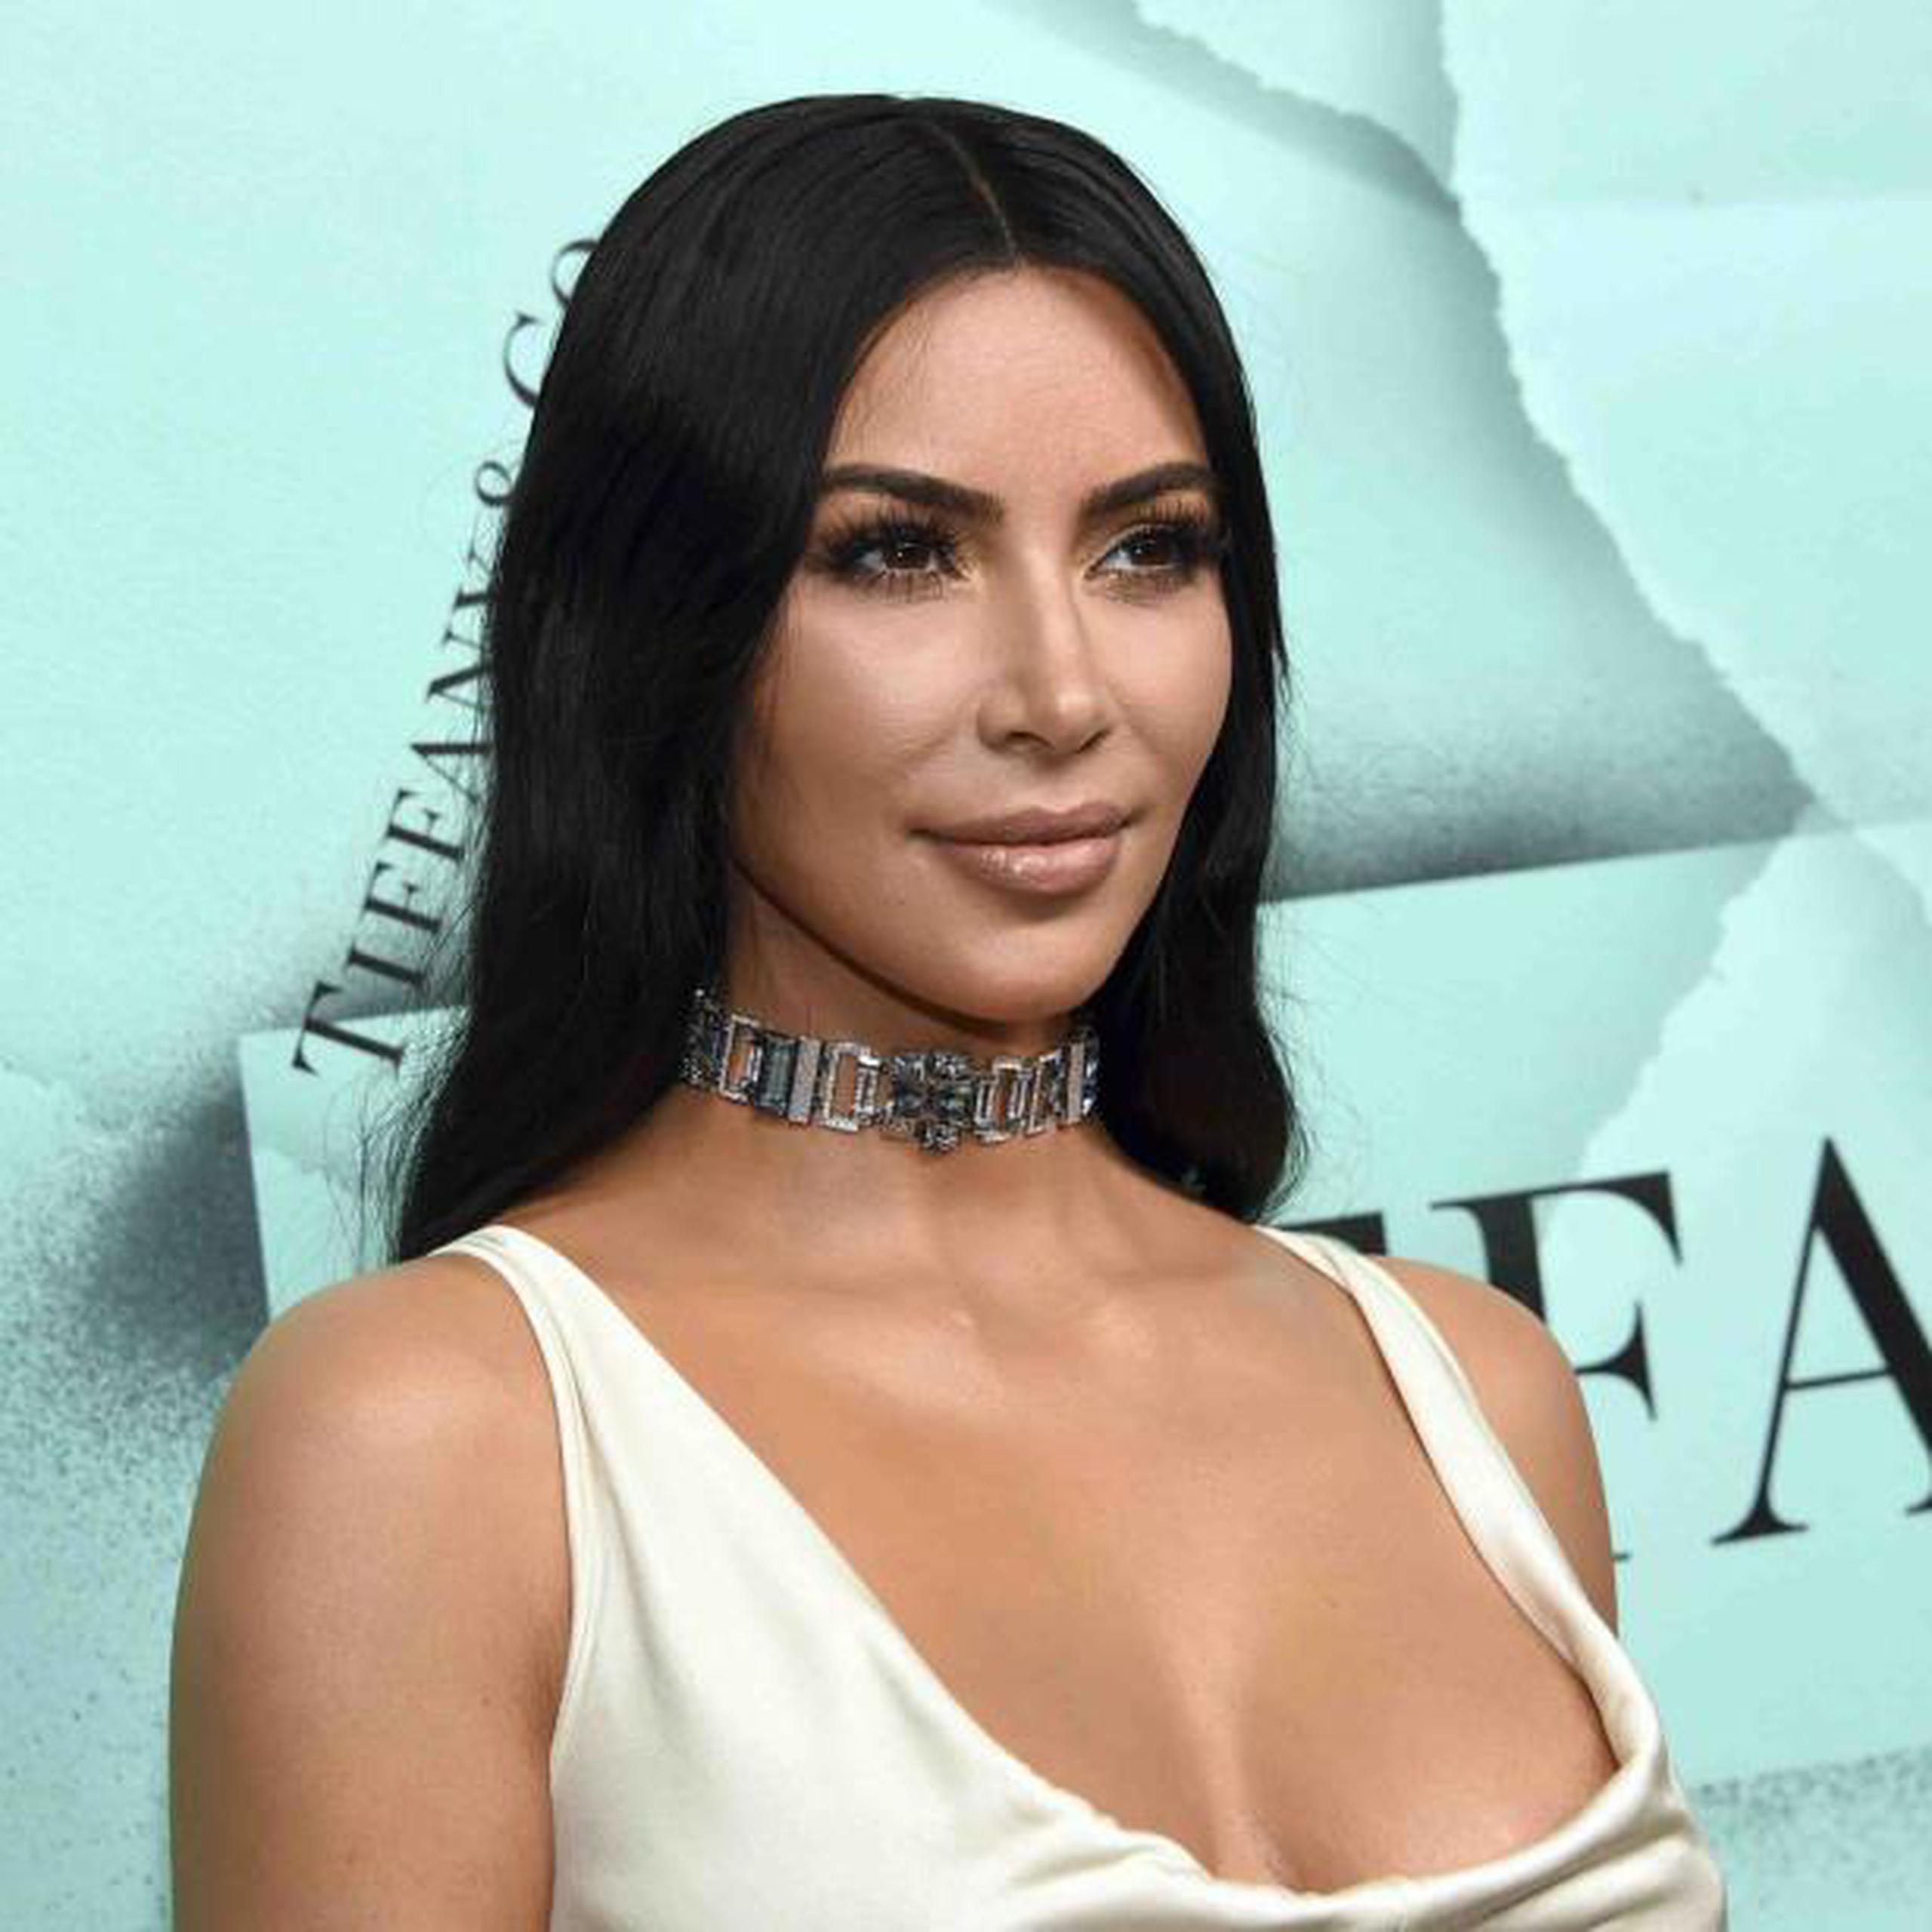 Kim Kardashian estudia derecho al tiempo que maneja sus negocios de cosméticos y su programa de televisión. (Evan Agostini / Invision / AP)